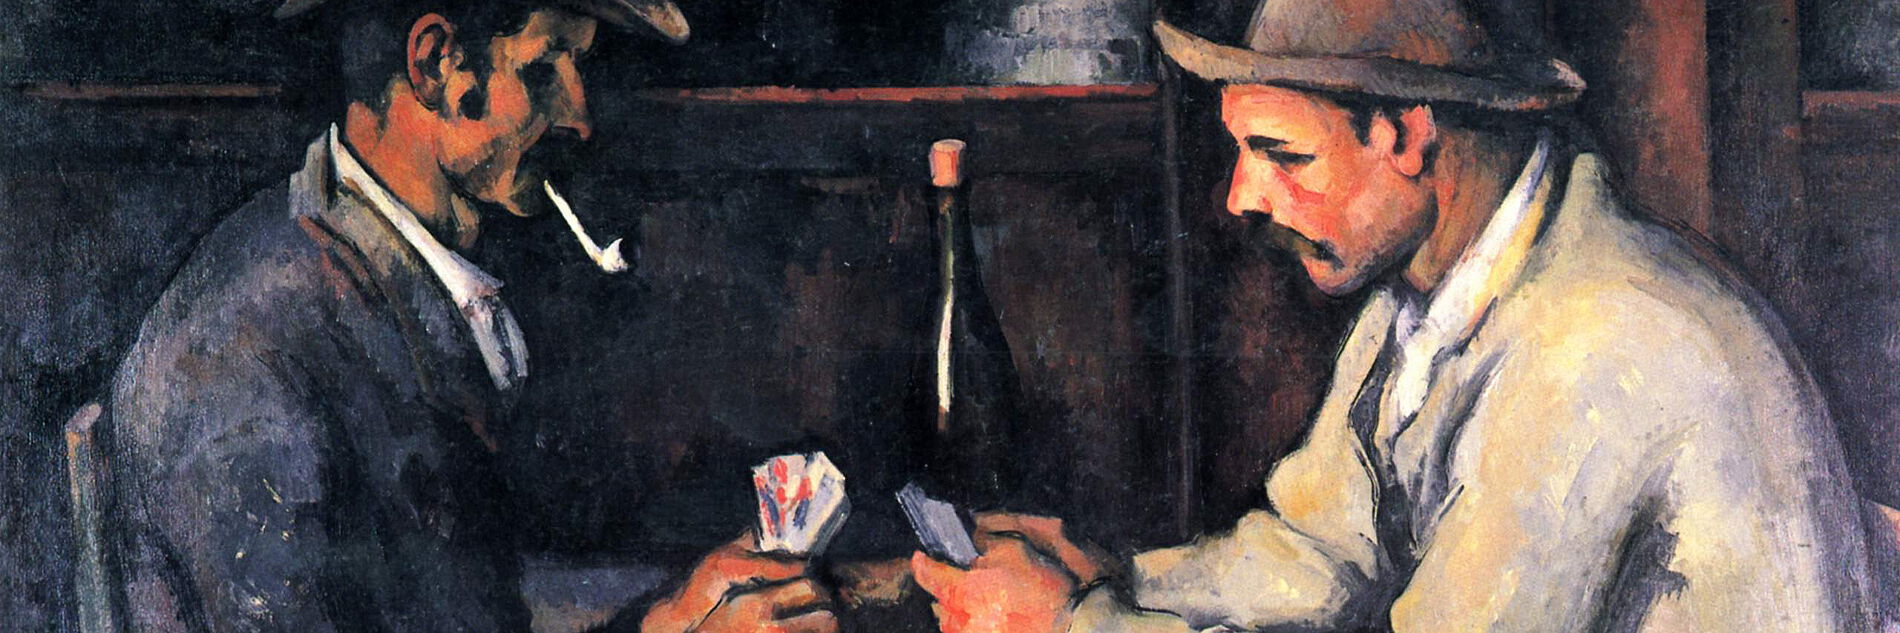 Paul Cézanne - Zwei Kartenspieler, 1892-93